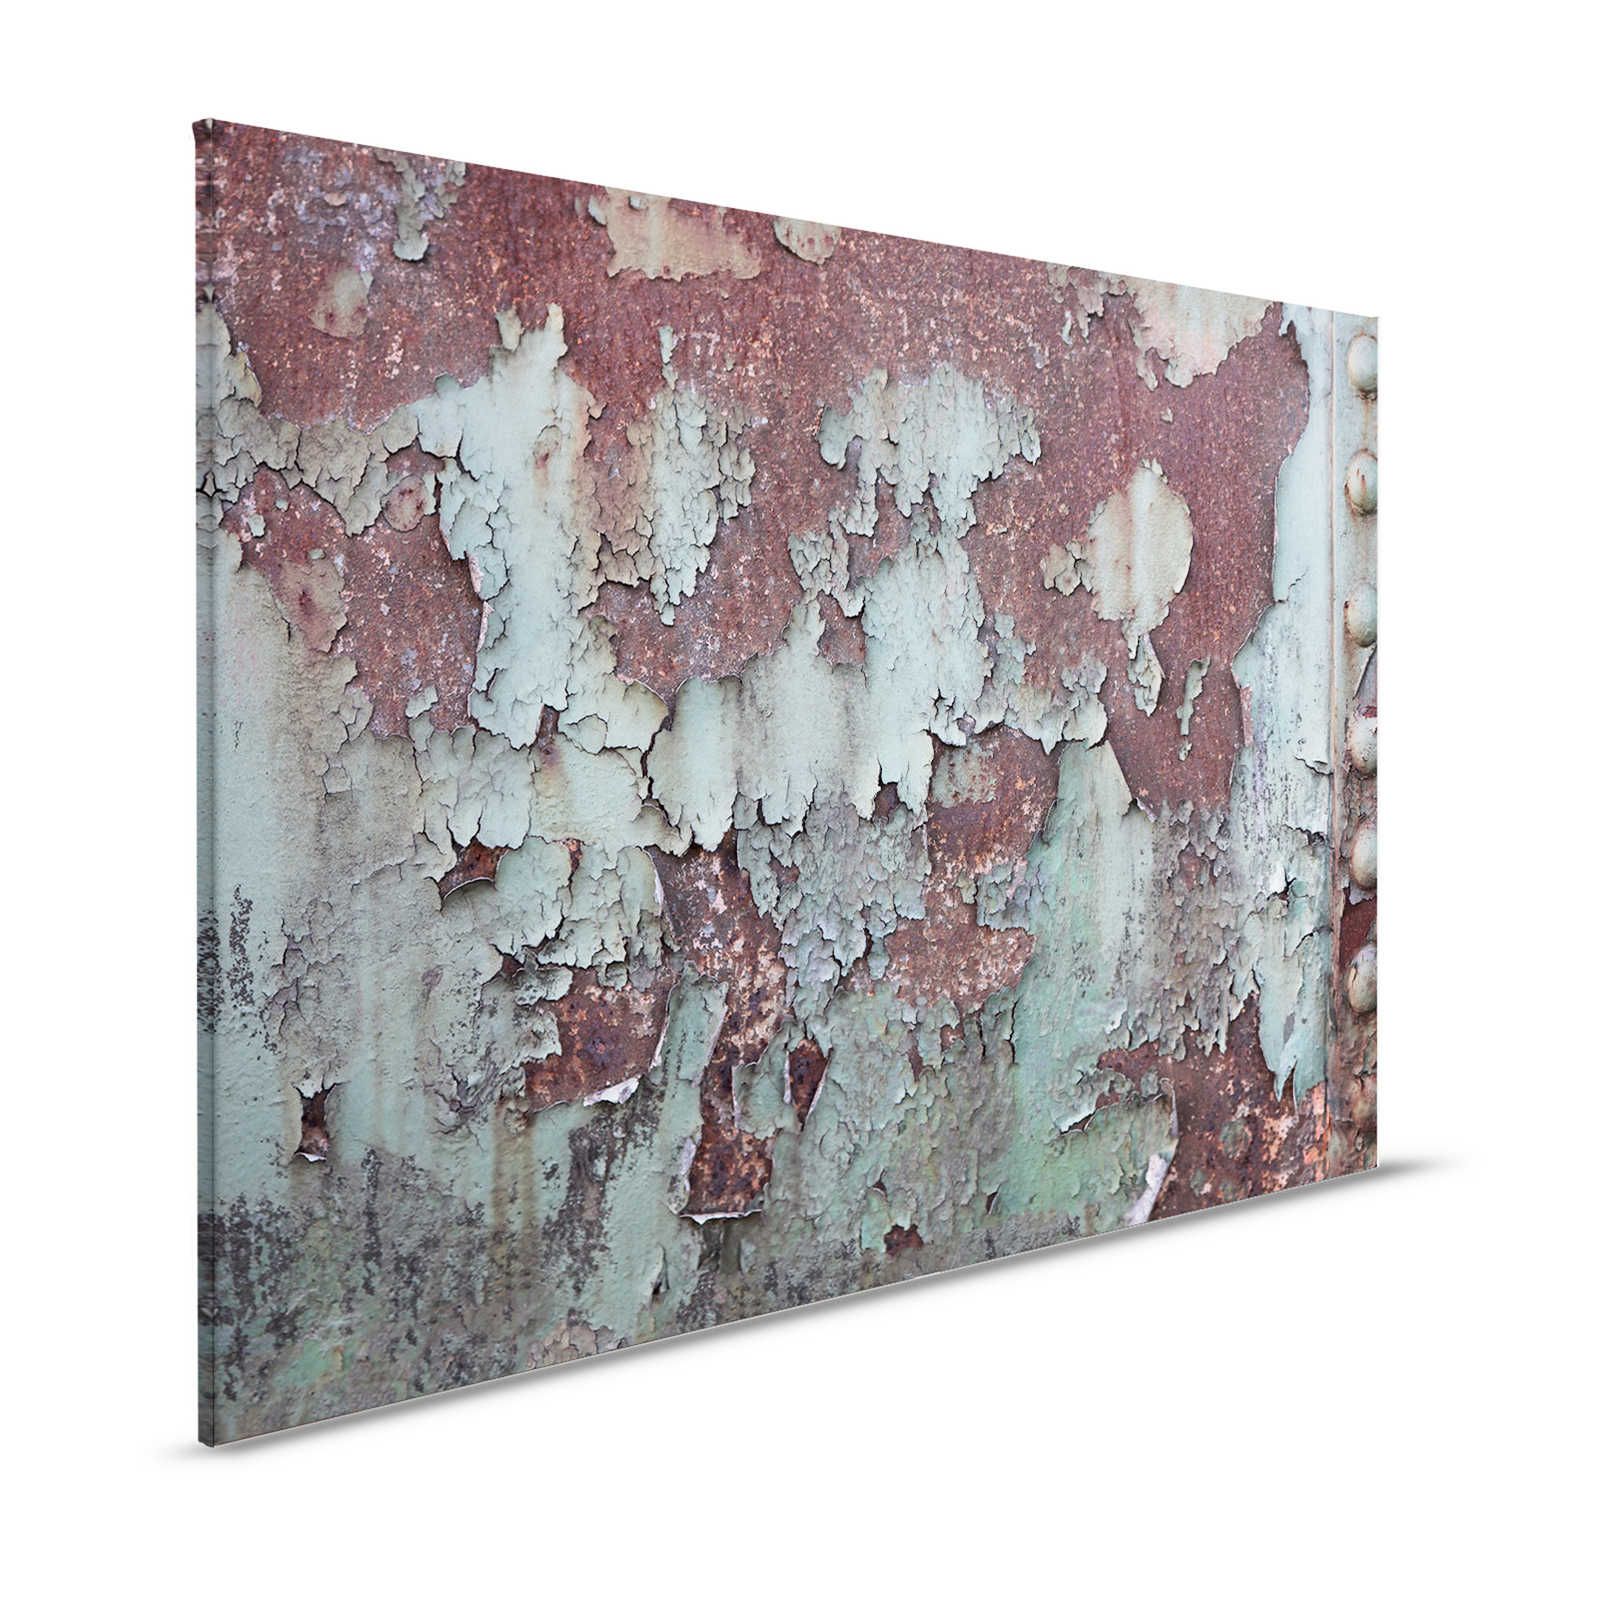 Canvas schilderij roestende scheepswand - metalen plaat met roest - 1.20 m x 0.80 m
